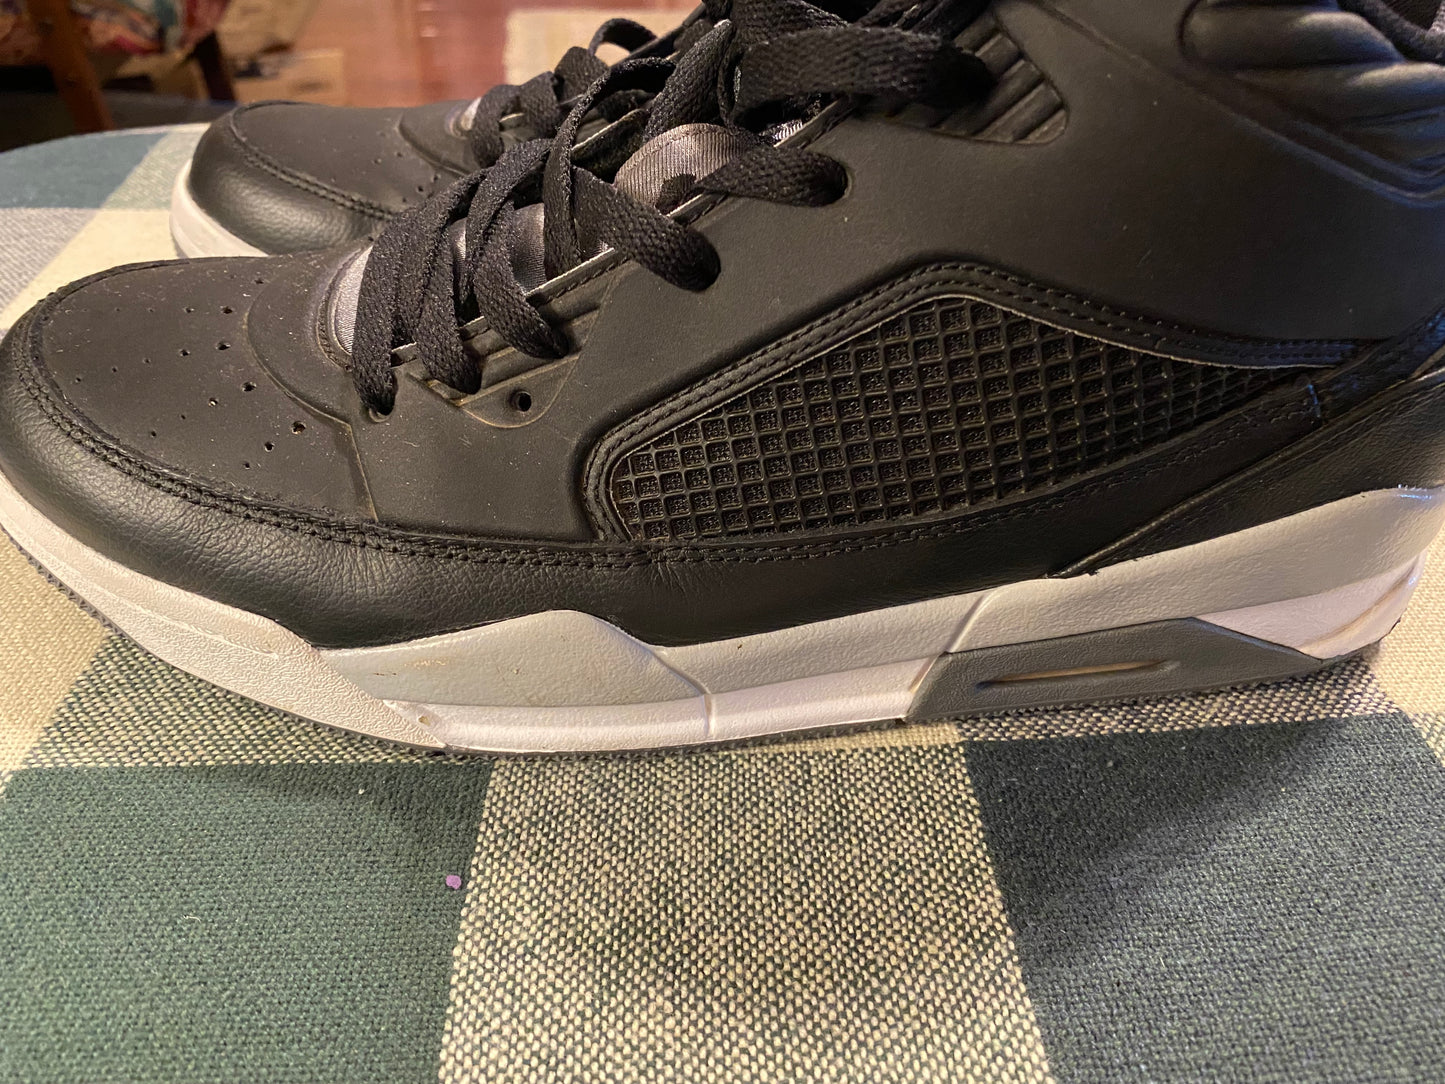 Air Jordan-"Flight Air Jordan" Shoes (sz. 9.5 men) Gray & White